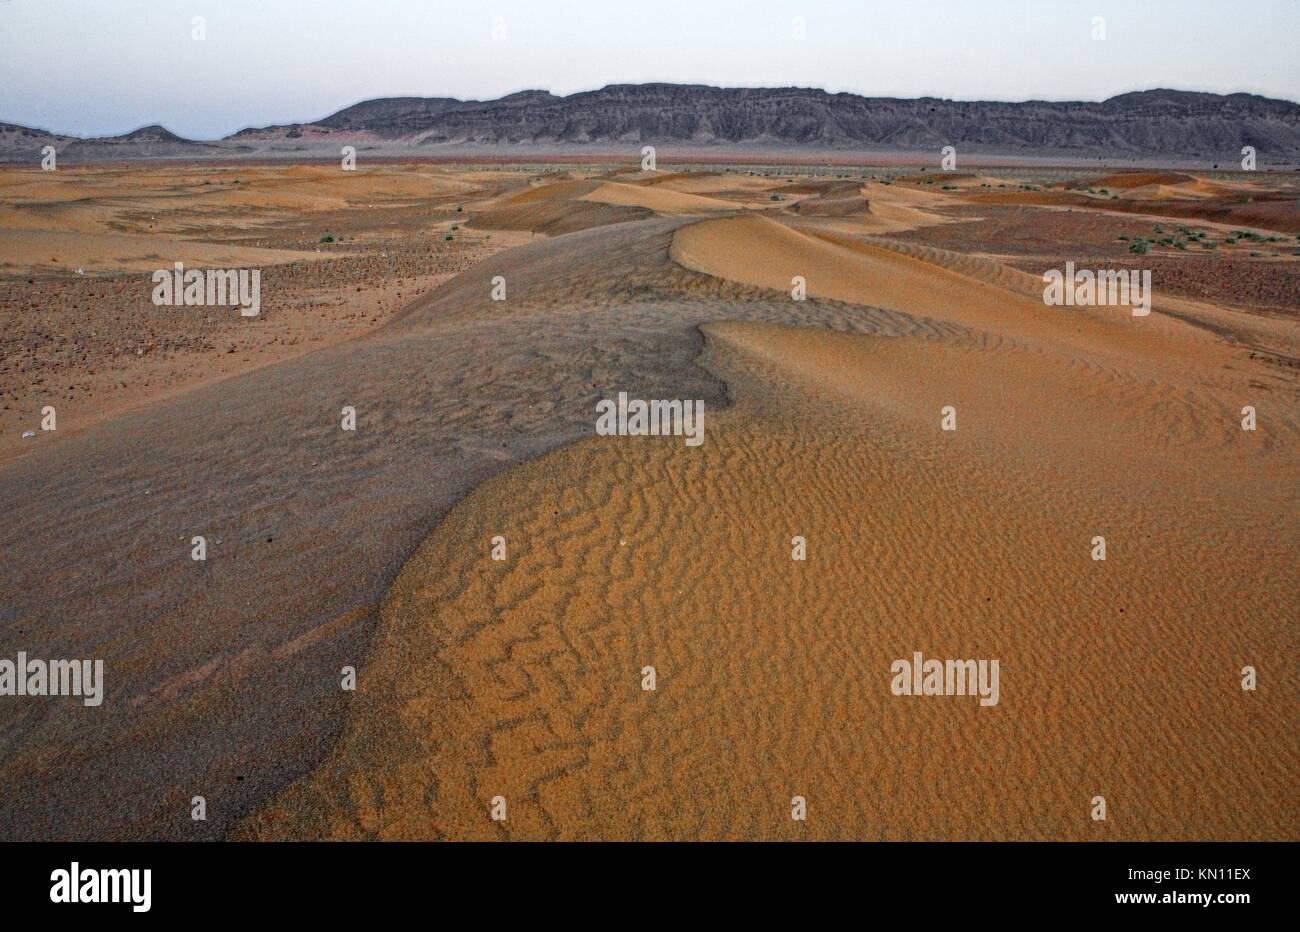 Dunes area near Zagora Stock Photo